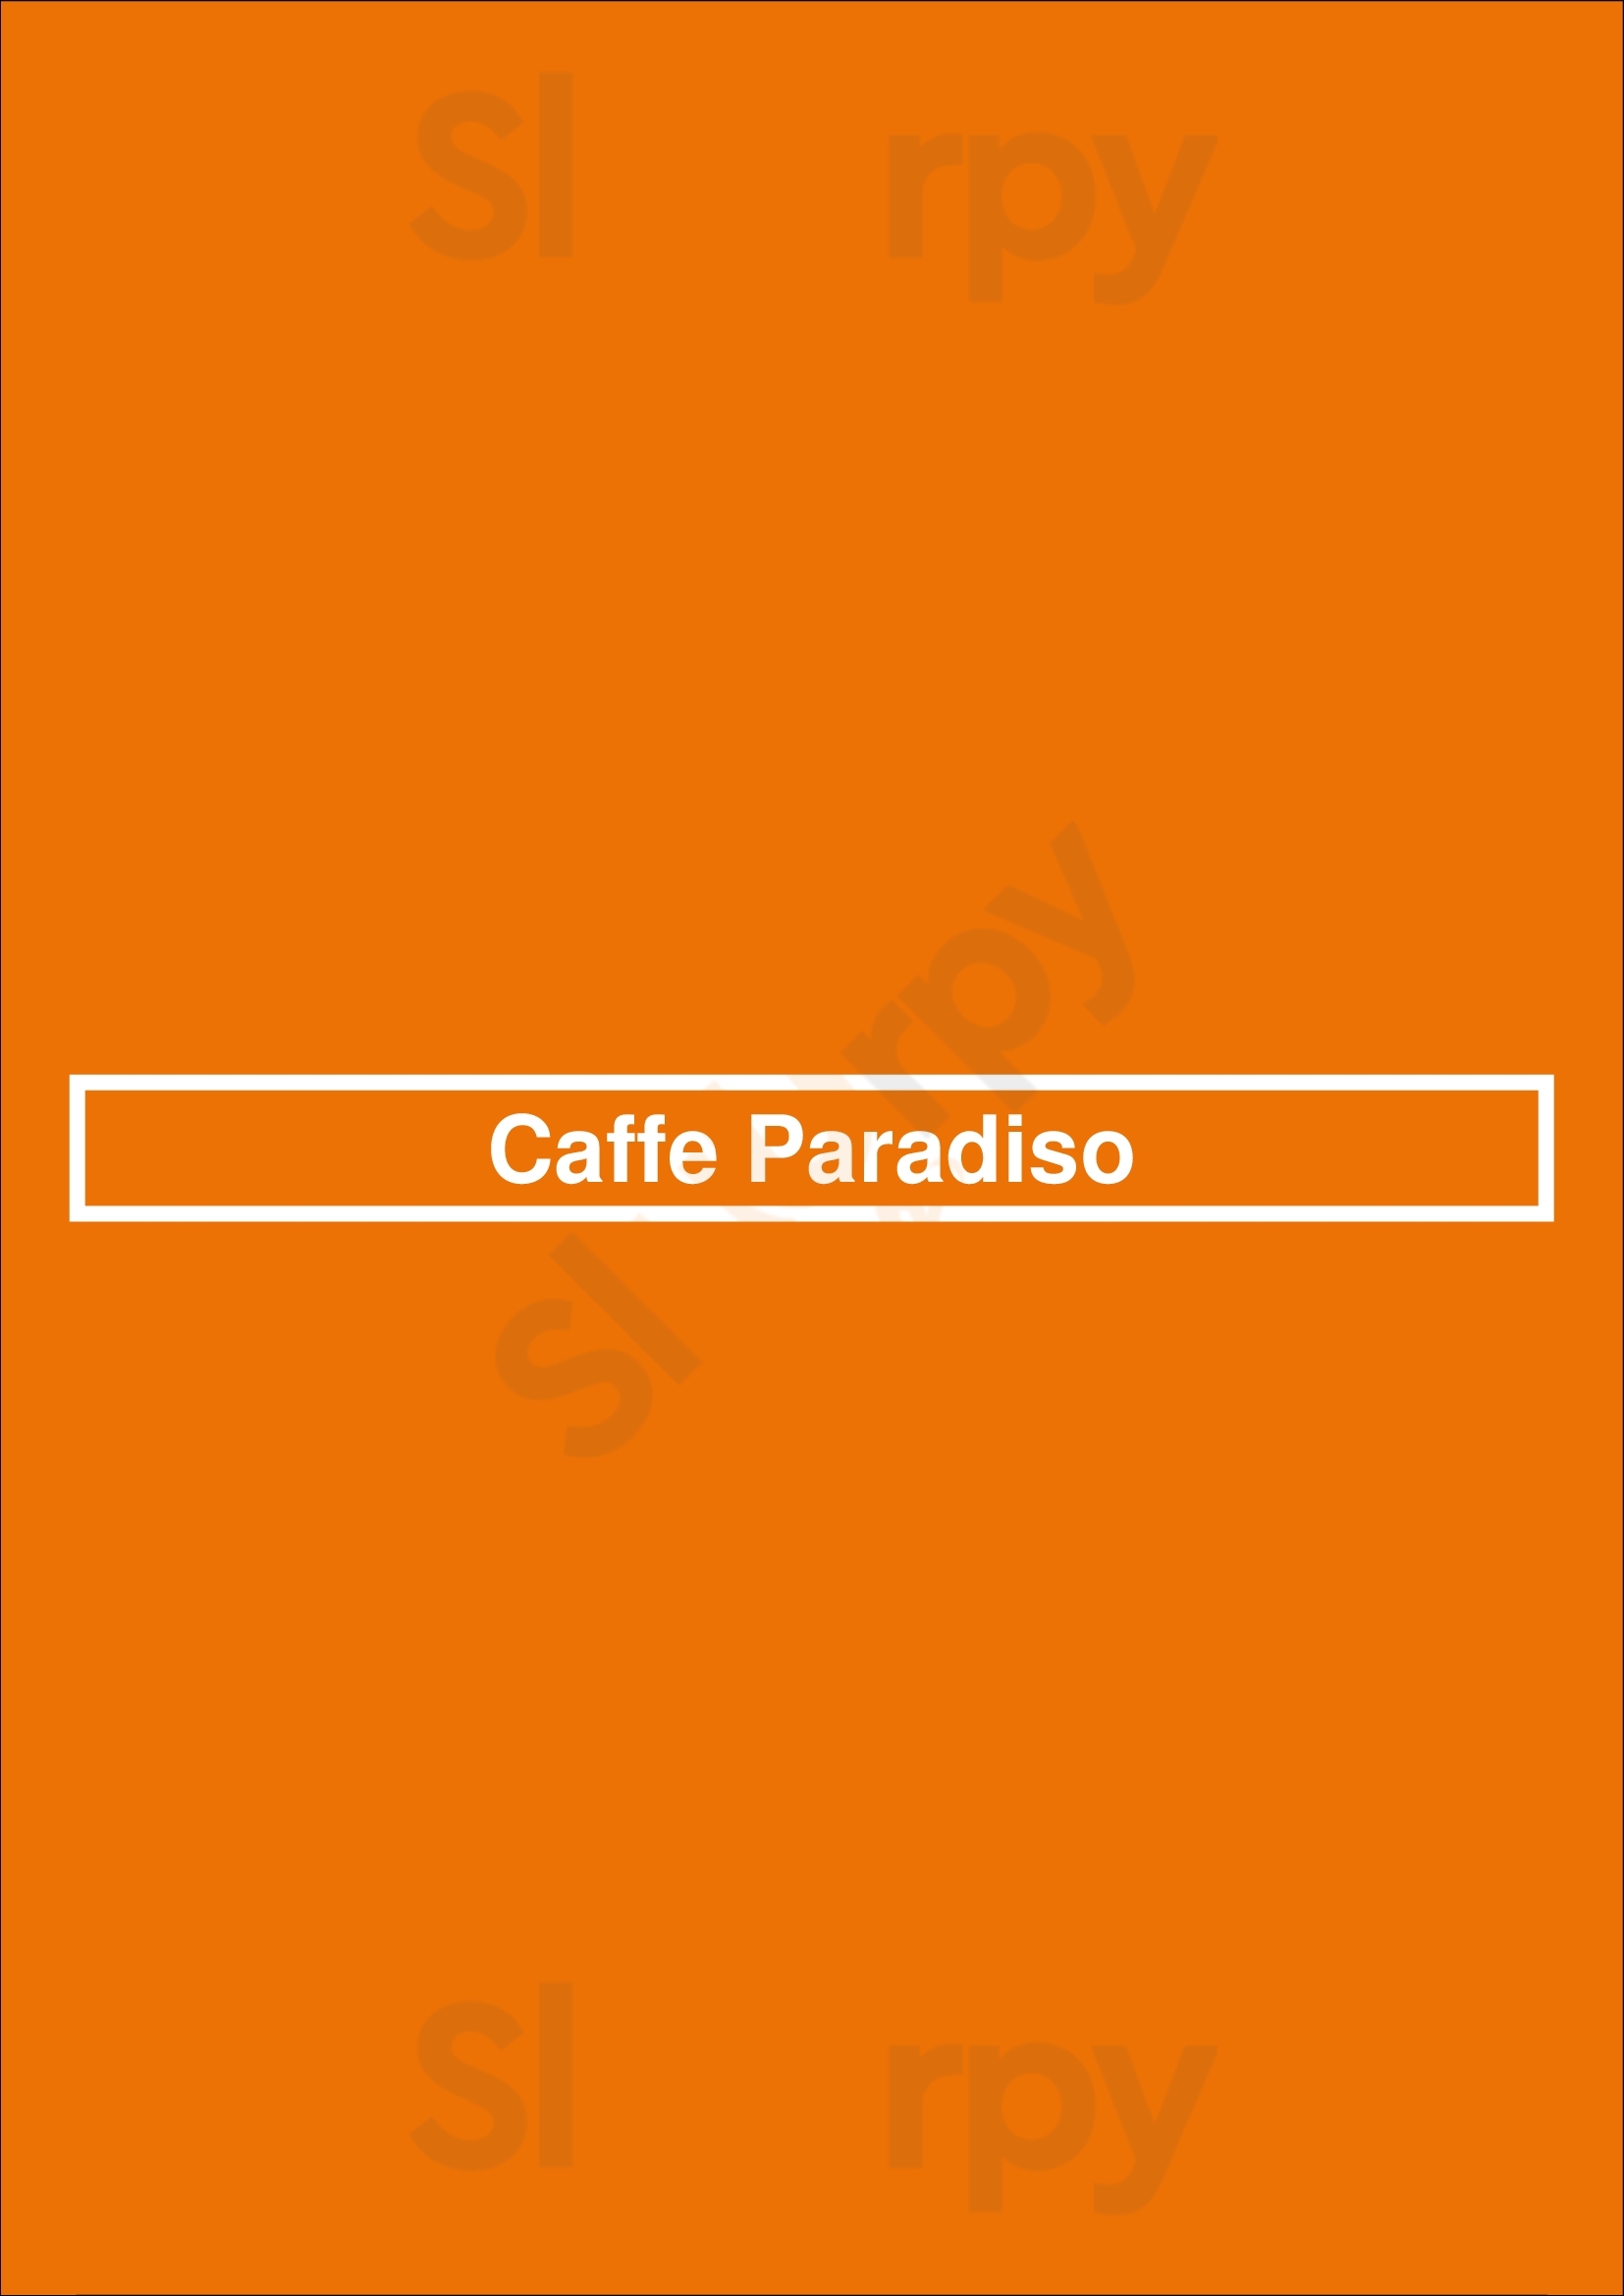 Caffe Paradiso Tampa Menu - 1